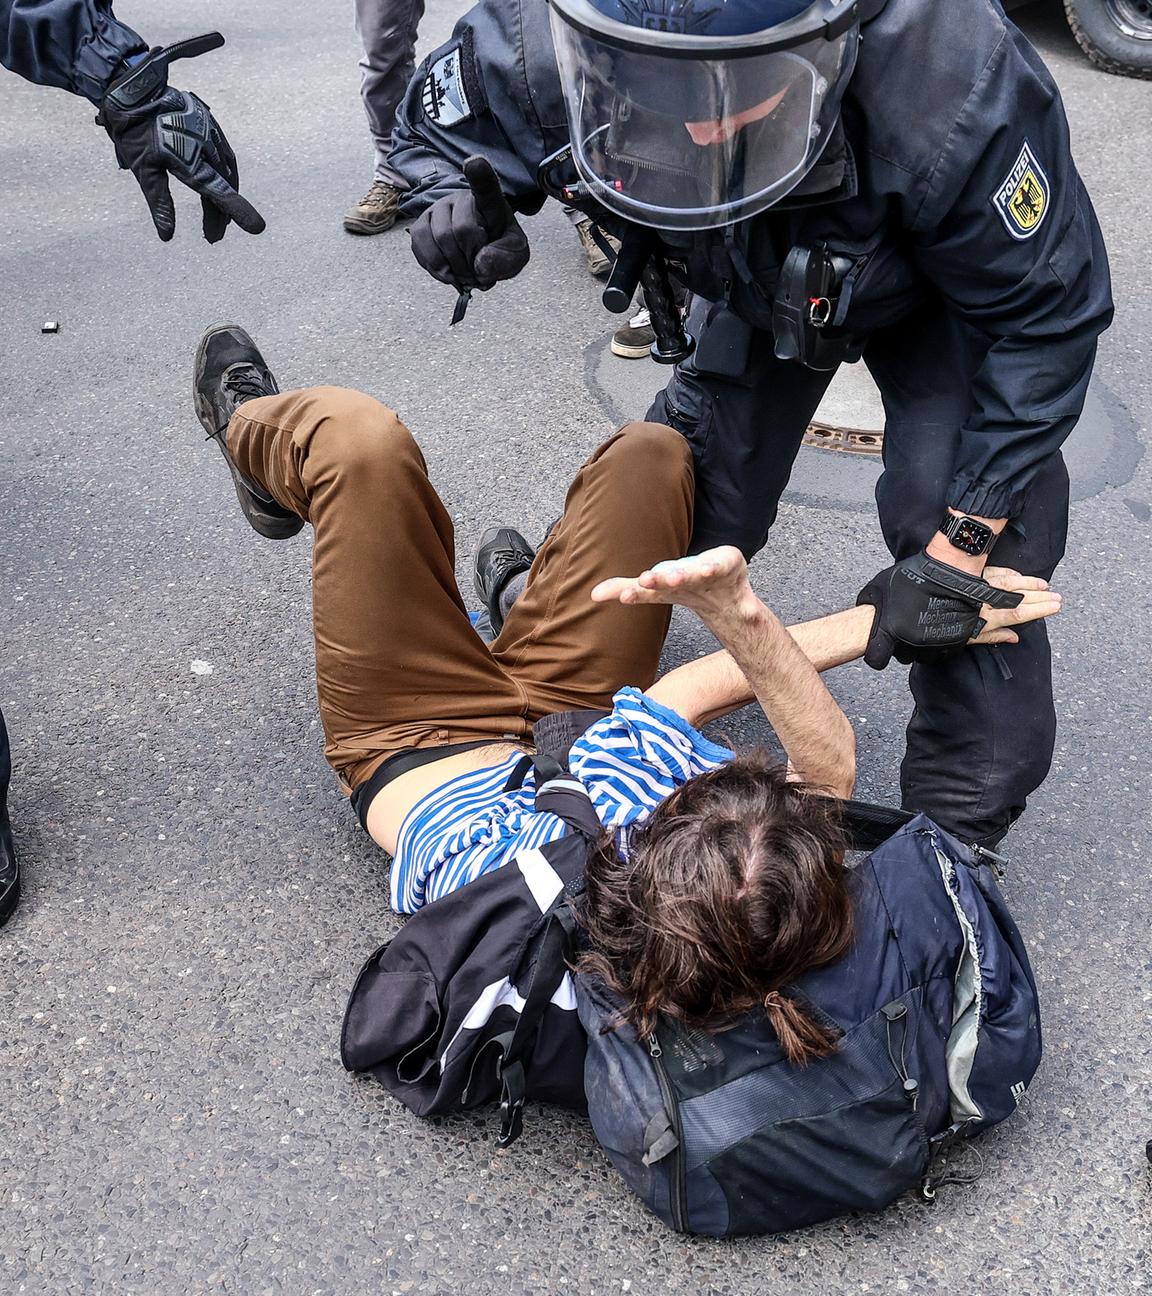 Polizisten diskutieren mit einem am Boden liegenden Demonstranten.